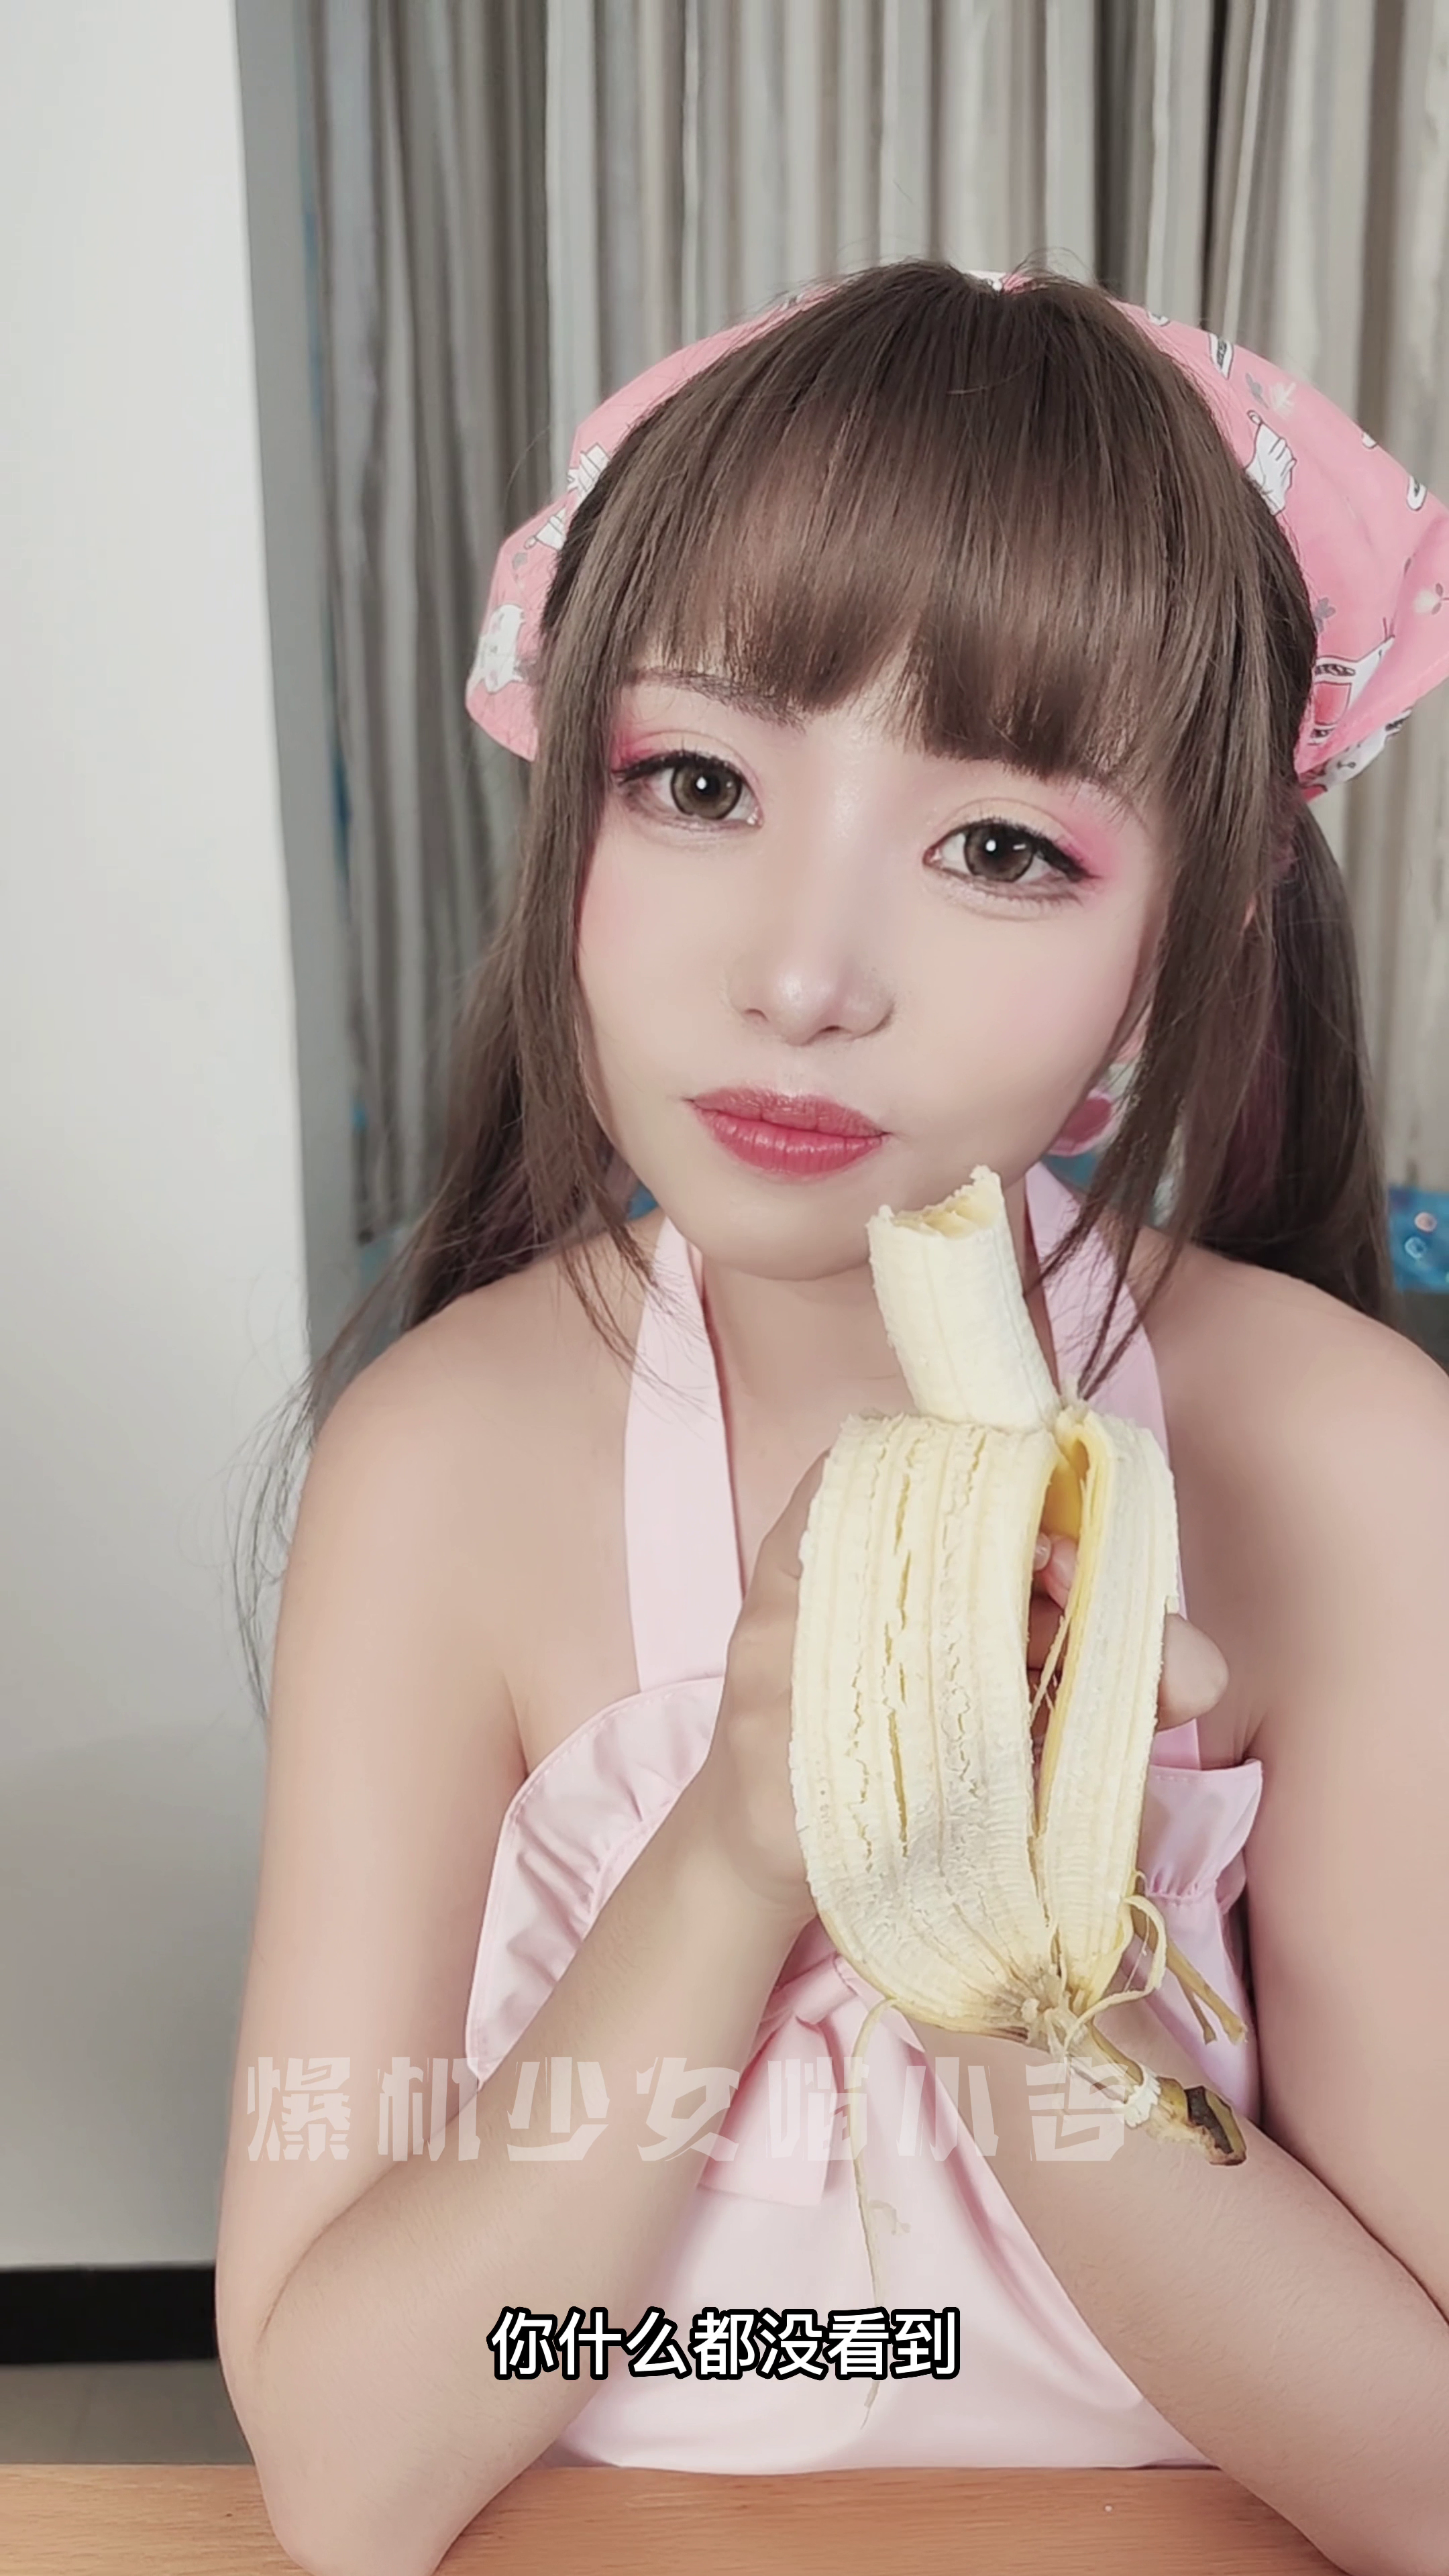 คลิปสาวจีนถ่ายรายการโชว์กินกล้วยเห็นแล้วเสียวหัว